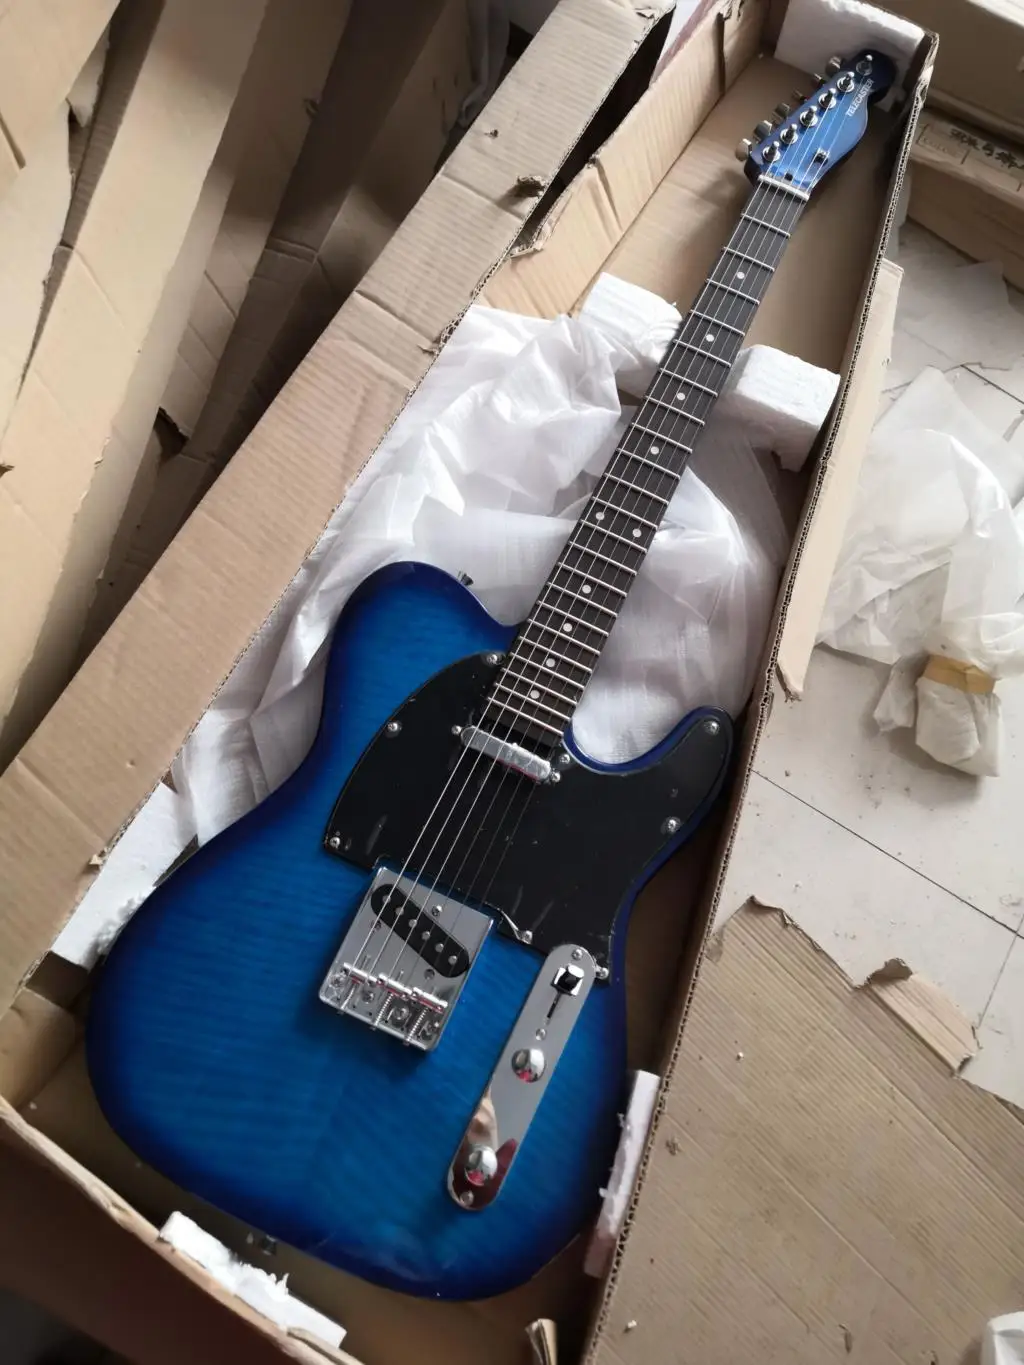 

Заводская пользовательская новая tl красный клен fretboard 6 струн электрическая гитара синяя палисандр гриф головка цветовая схема 72